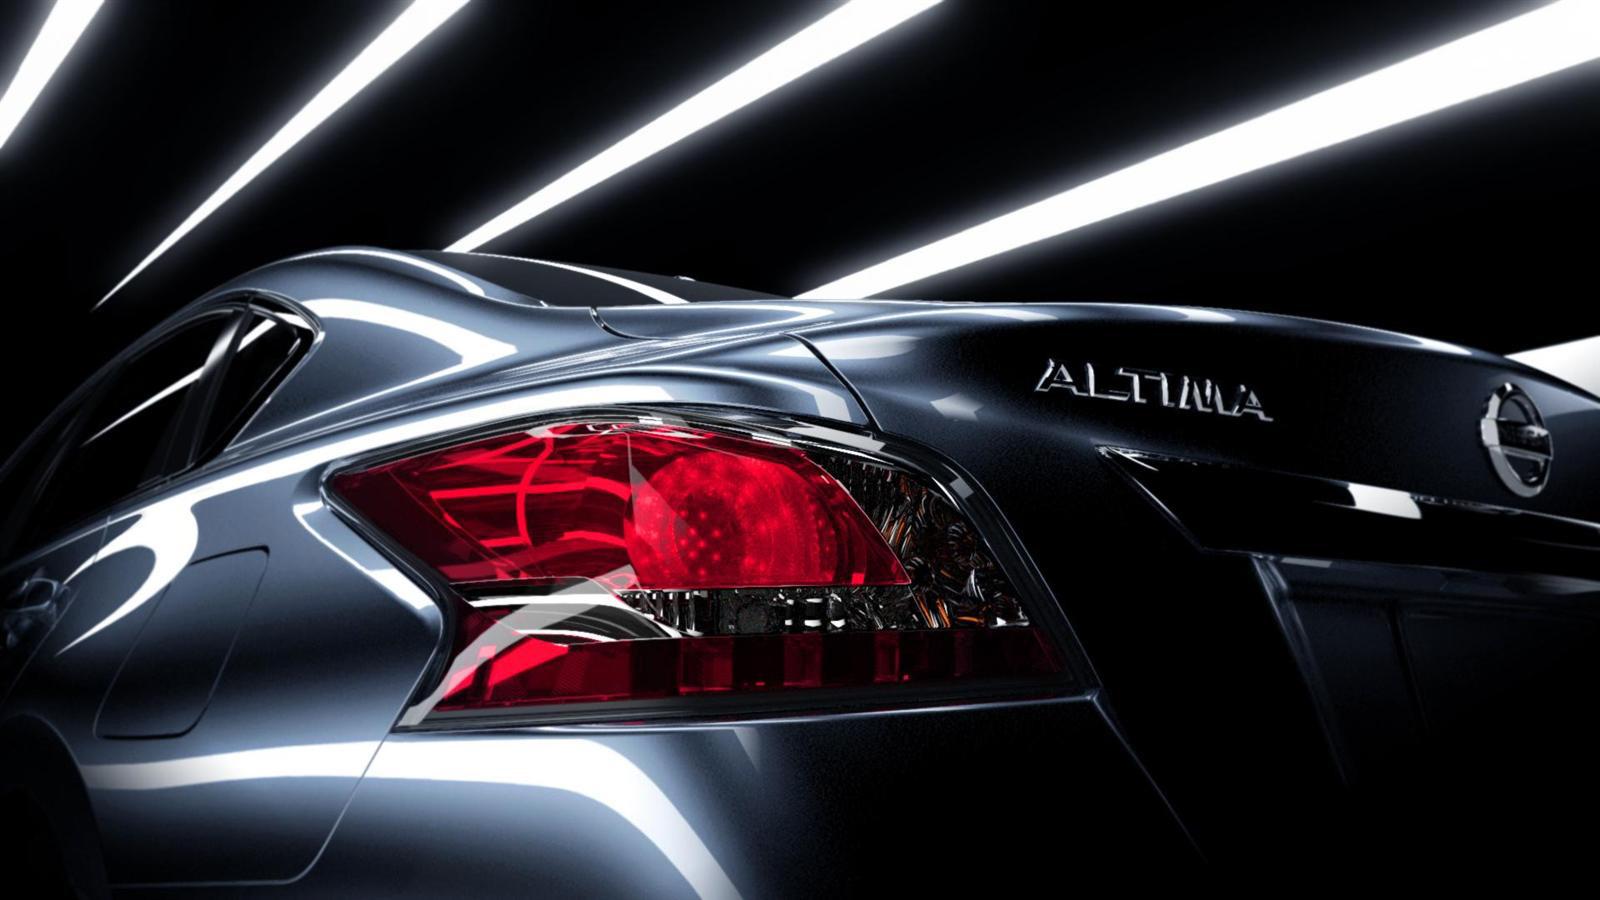 Nissan Altima&H Enterprises